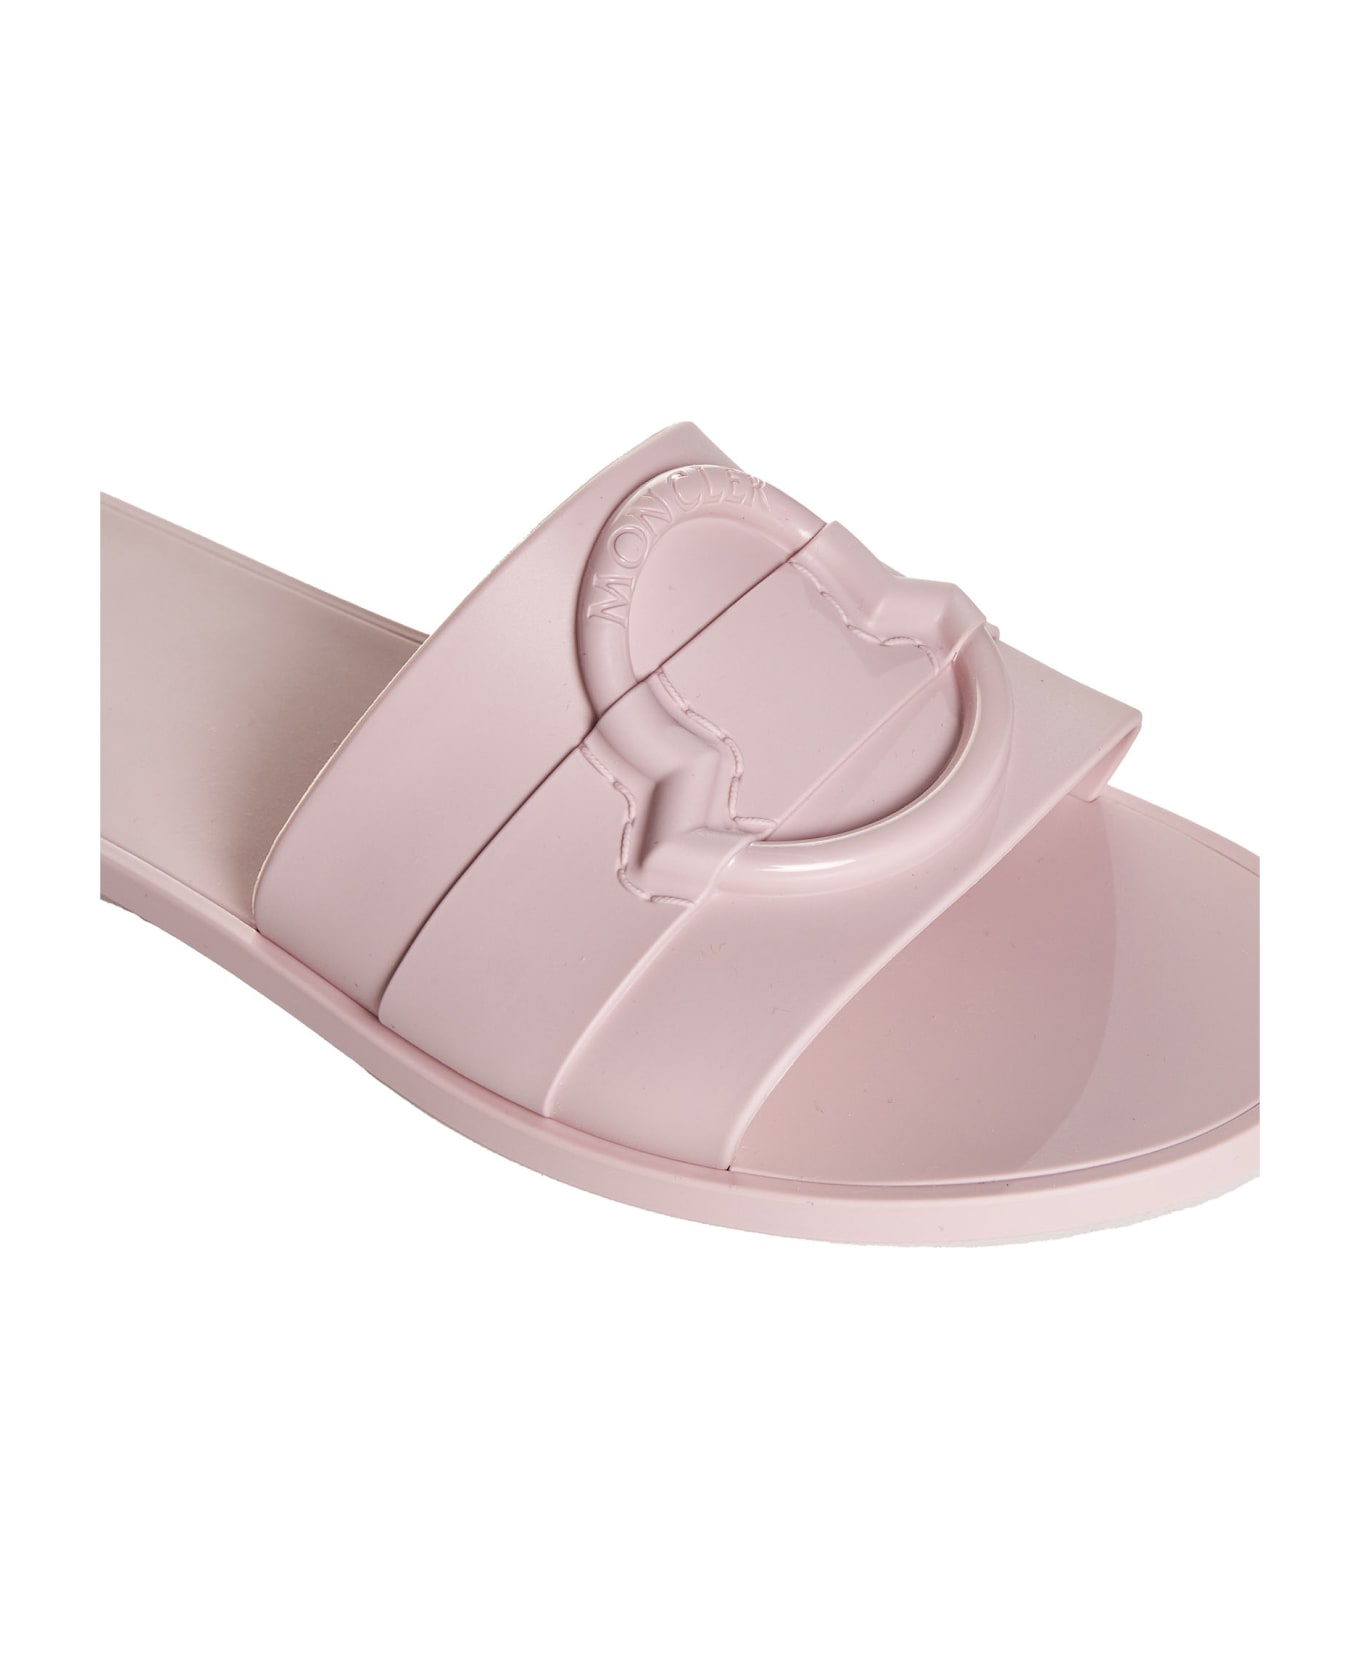 Moncler Sandals - Rosa